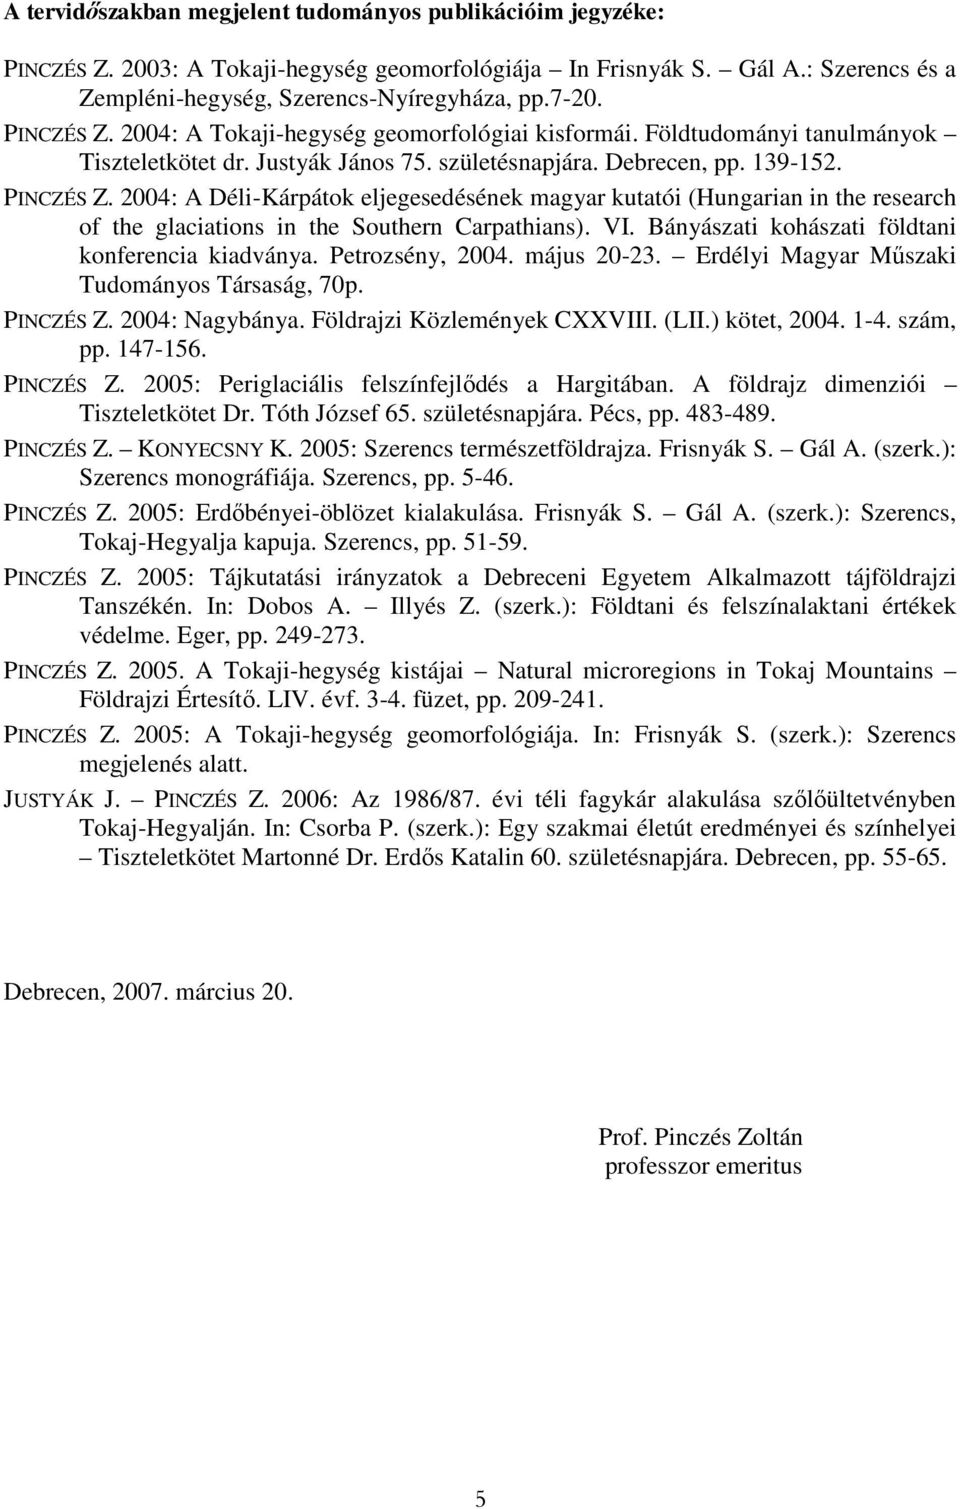 2004: A Déli-Kárpátok eljegesedésének magyar kutatói (Hungarian in the research of the glaciations in the Southern Carpathians). VI. Bányászati kohászati földtani konferencia kiadványa.